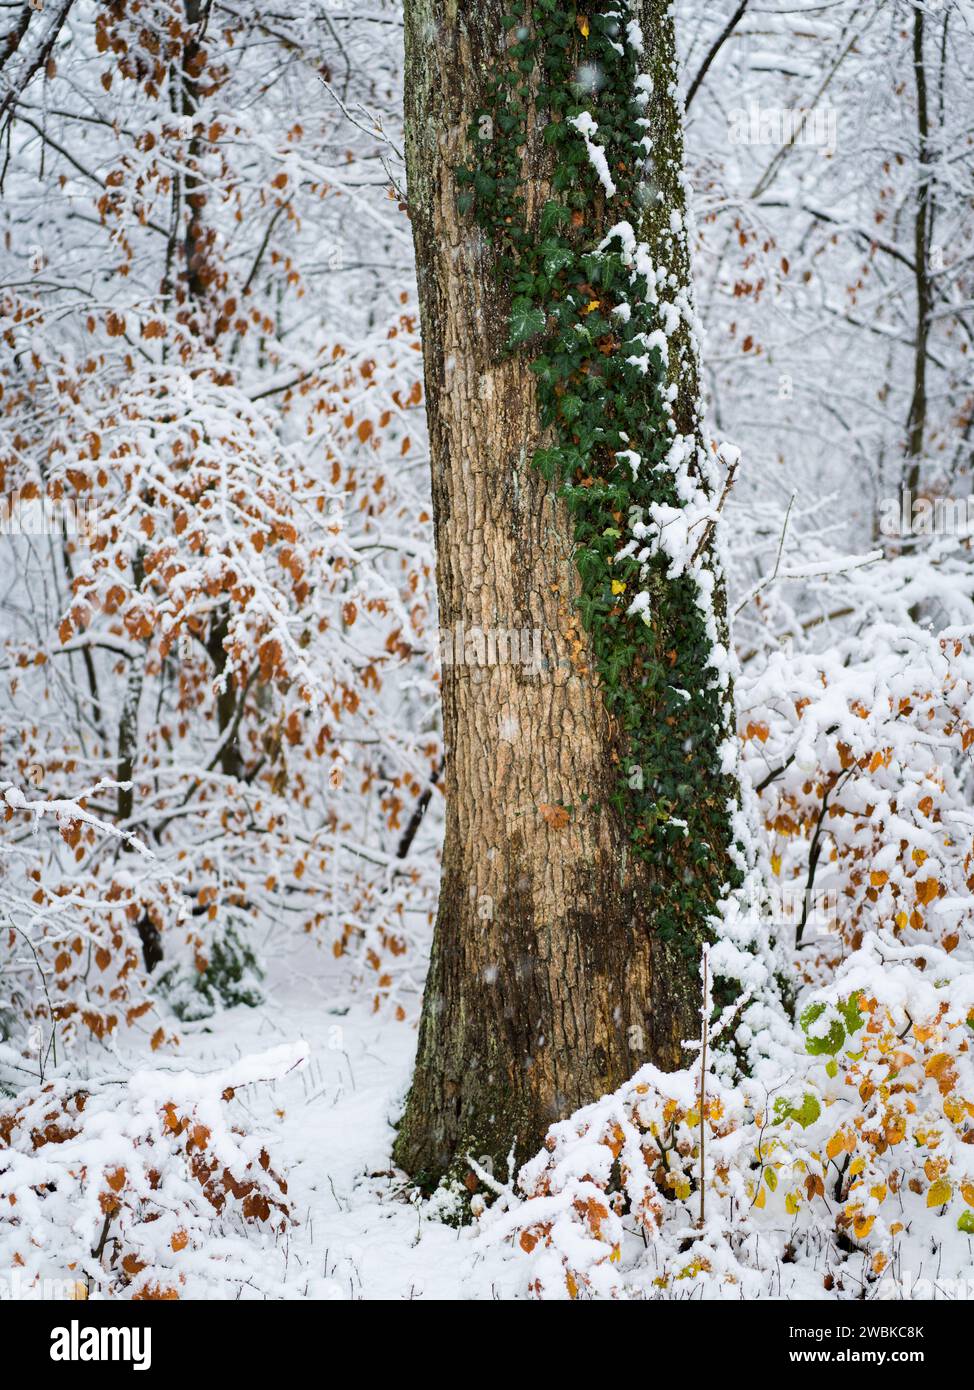 Paysage hivernal, forêt, détail avec tronc d'arbre couvert de lierre Banque D'Images